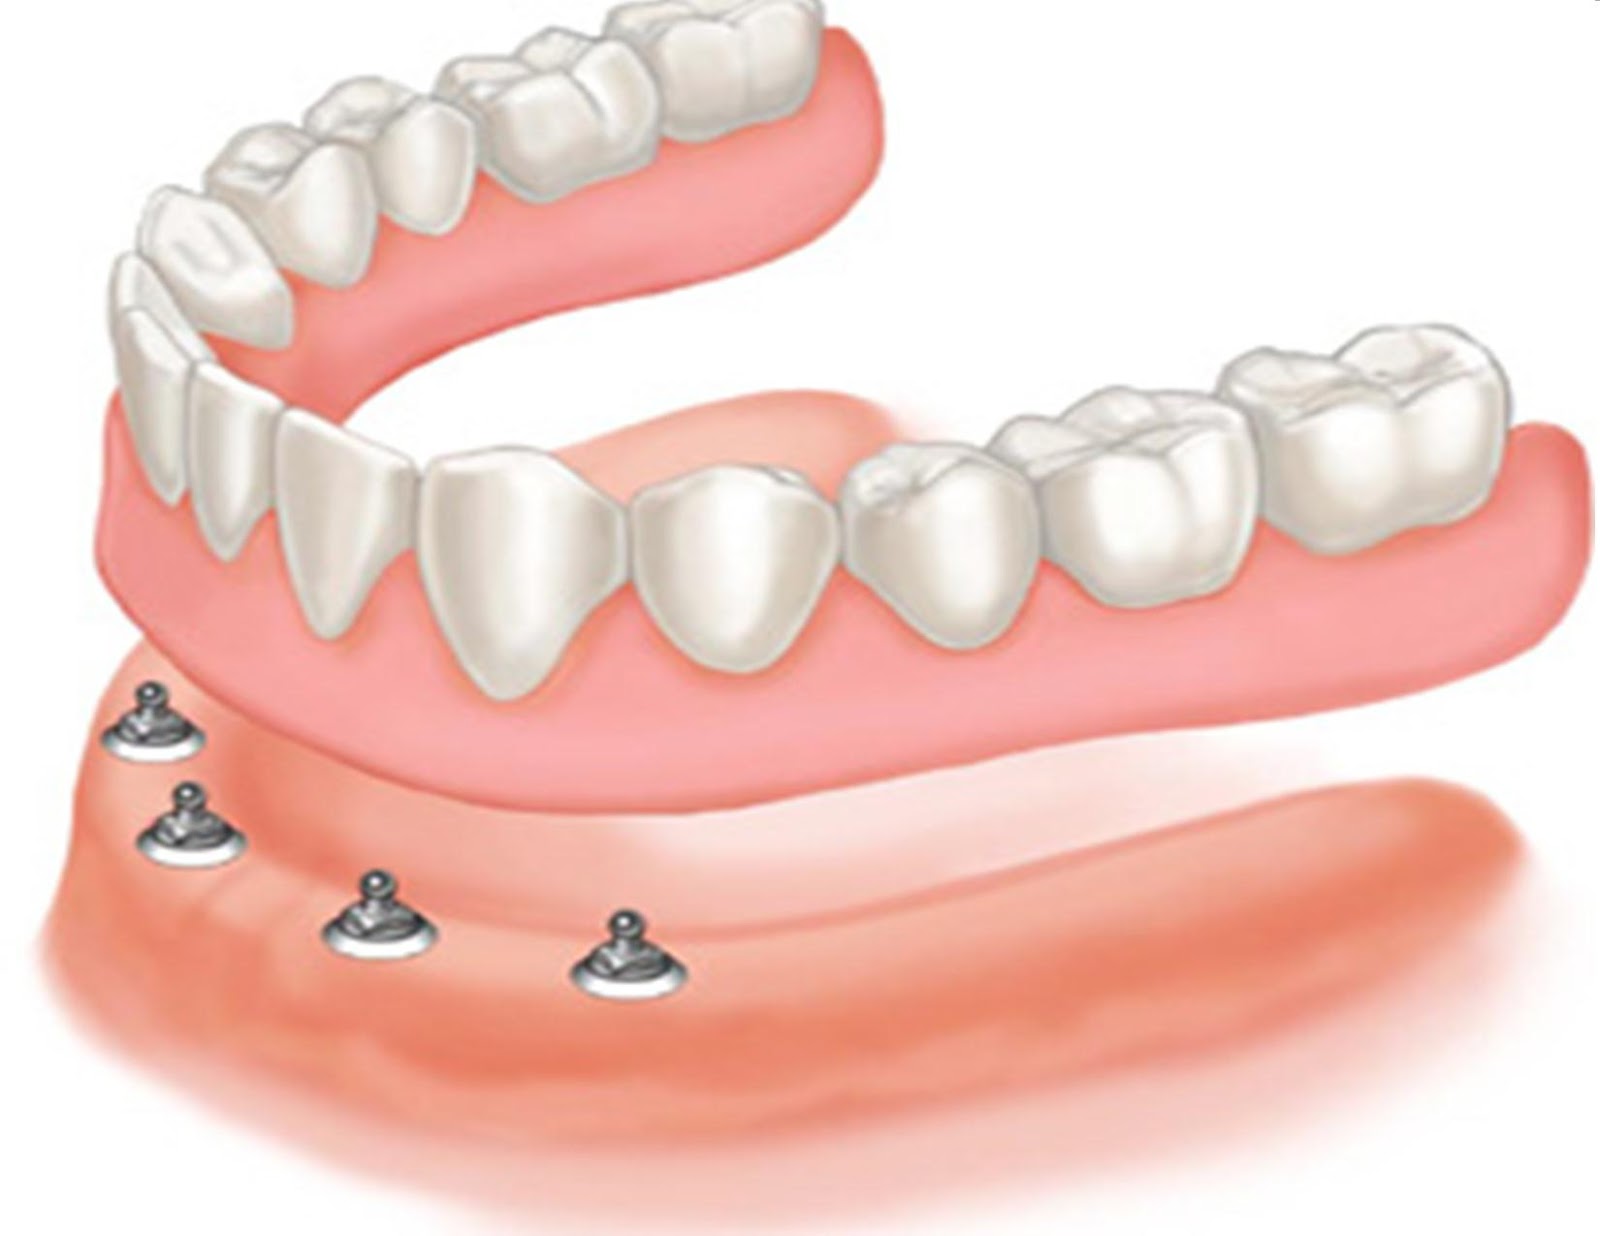 هر آنچه باید در مورد پروتزهای دندانی بدانید